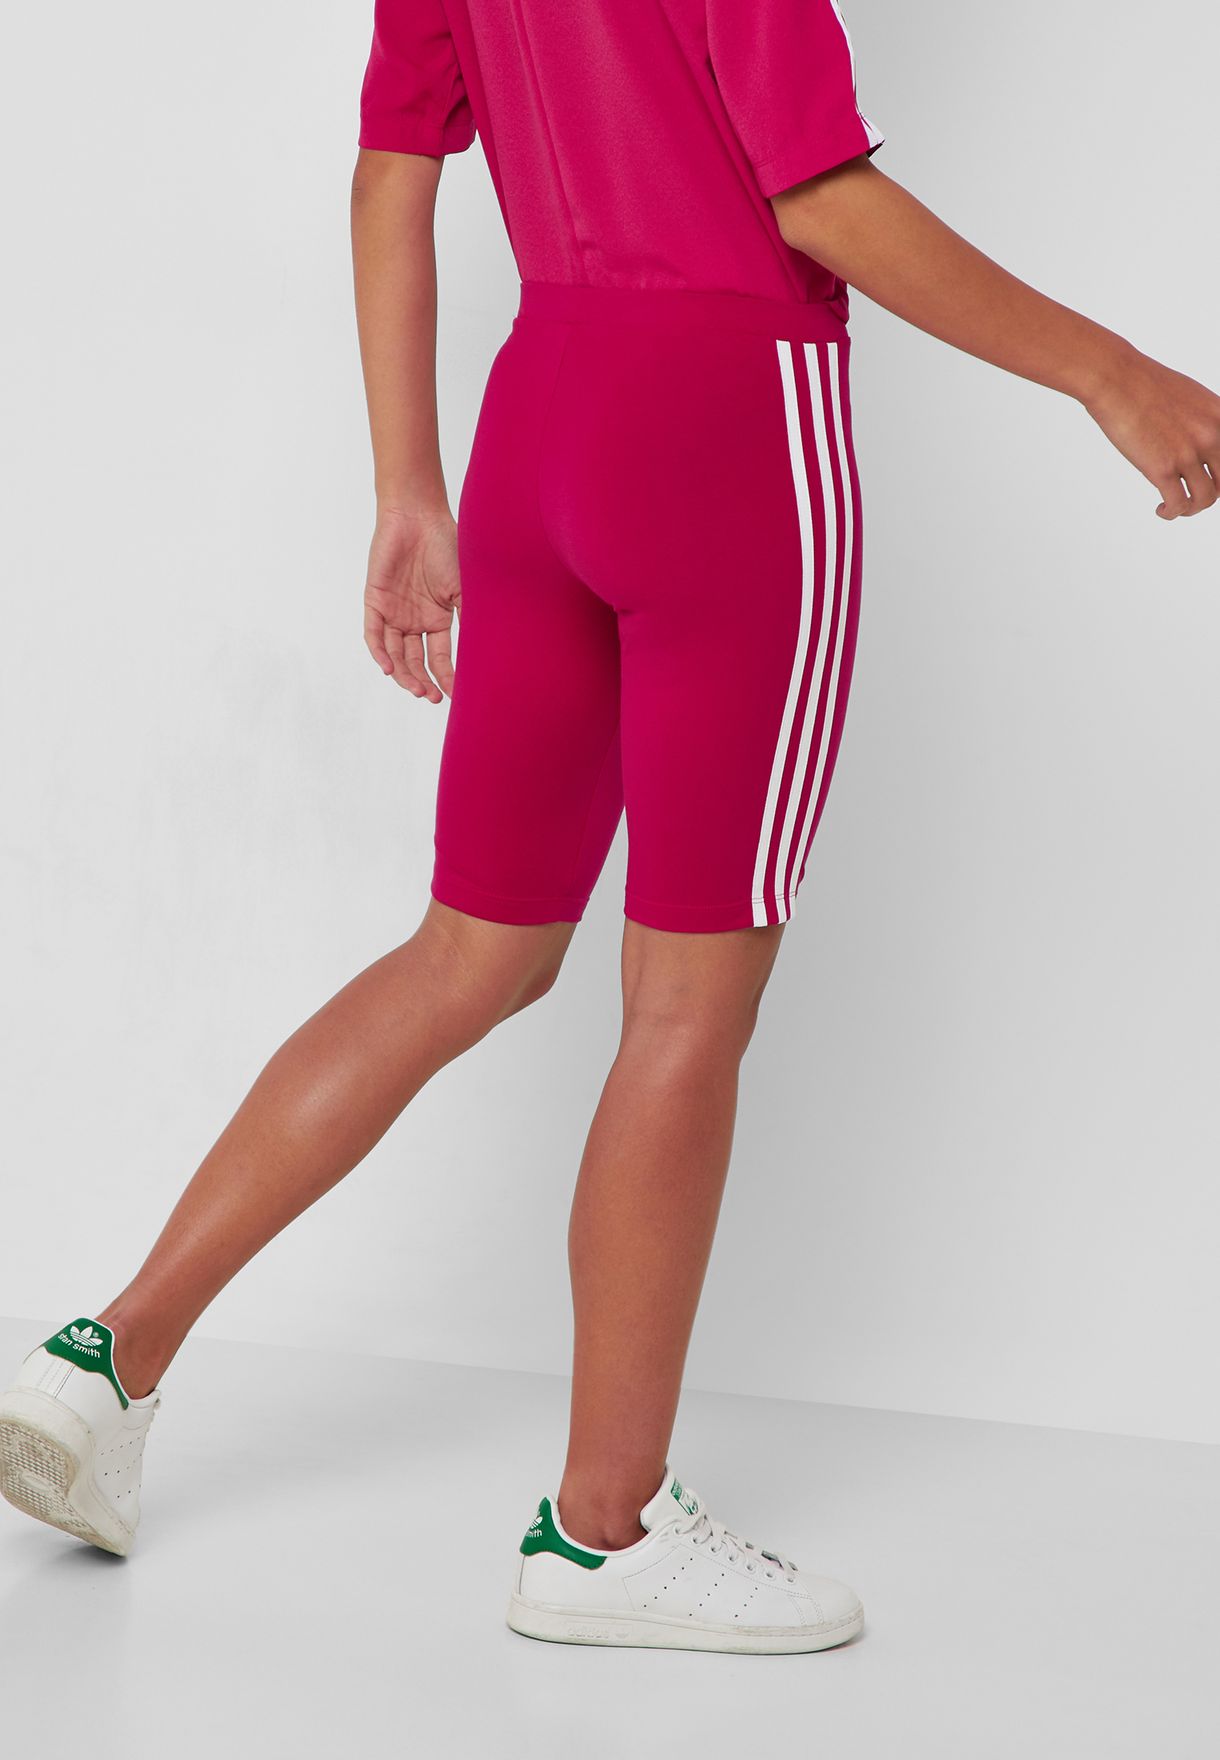 pink adidas biker shorts